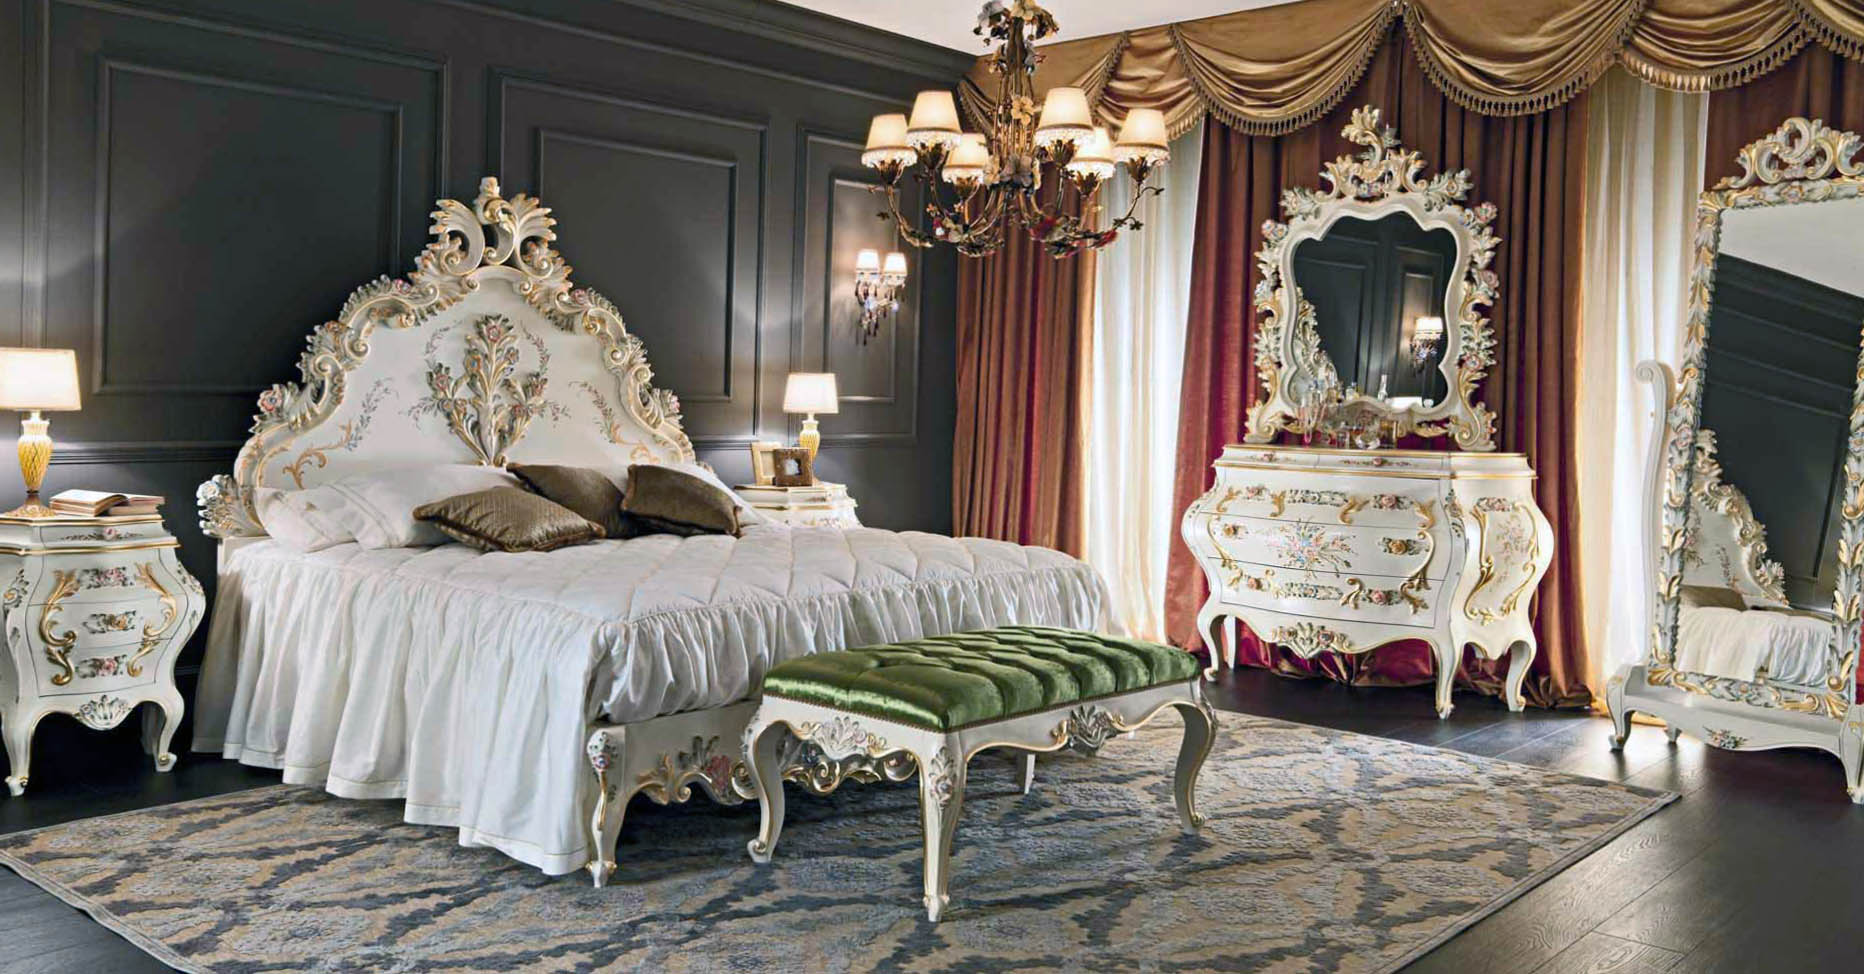 Для оформления спальни использовался контраст темно-коричневых, золотых, красных и белых цветов. Мебель подобрана в соответствии со стилем барокко.